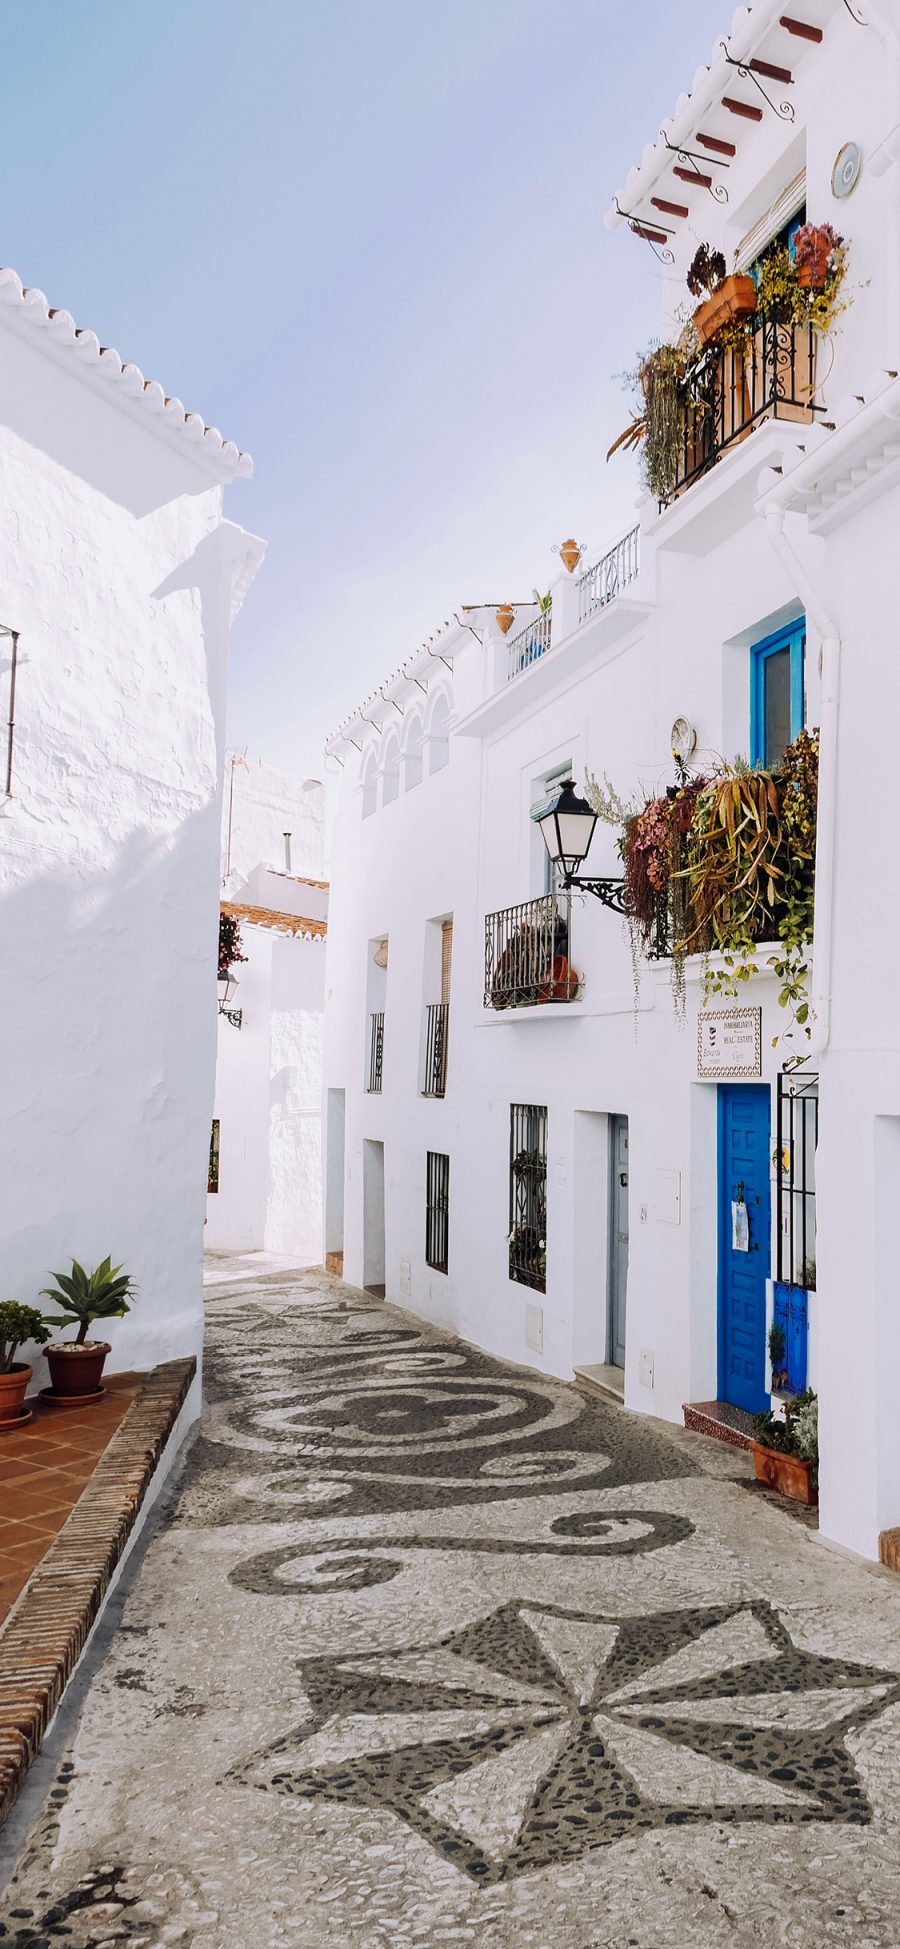 [2436×1125]小镇 建筑 地中海 旅游景点 苹果手机壁纸图片